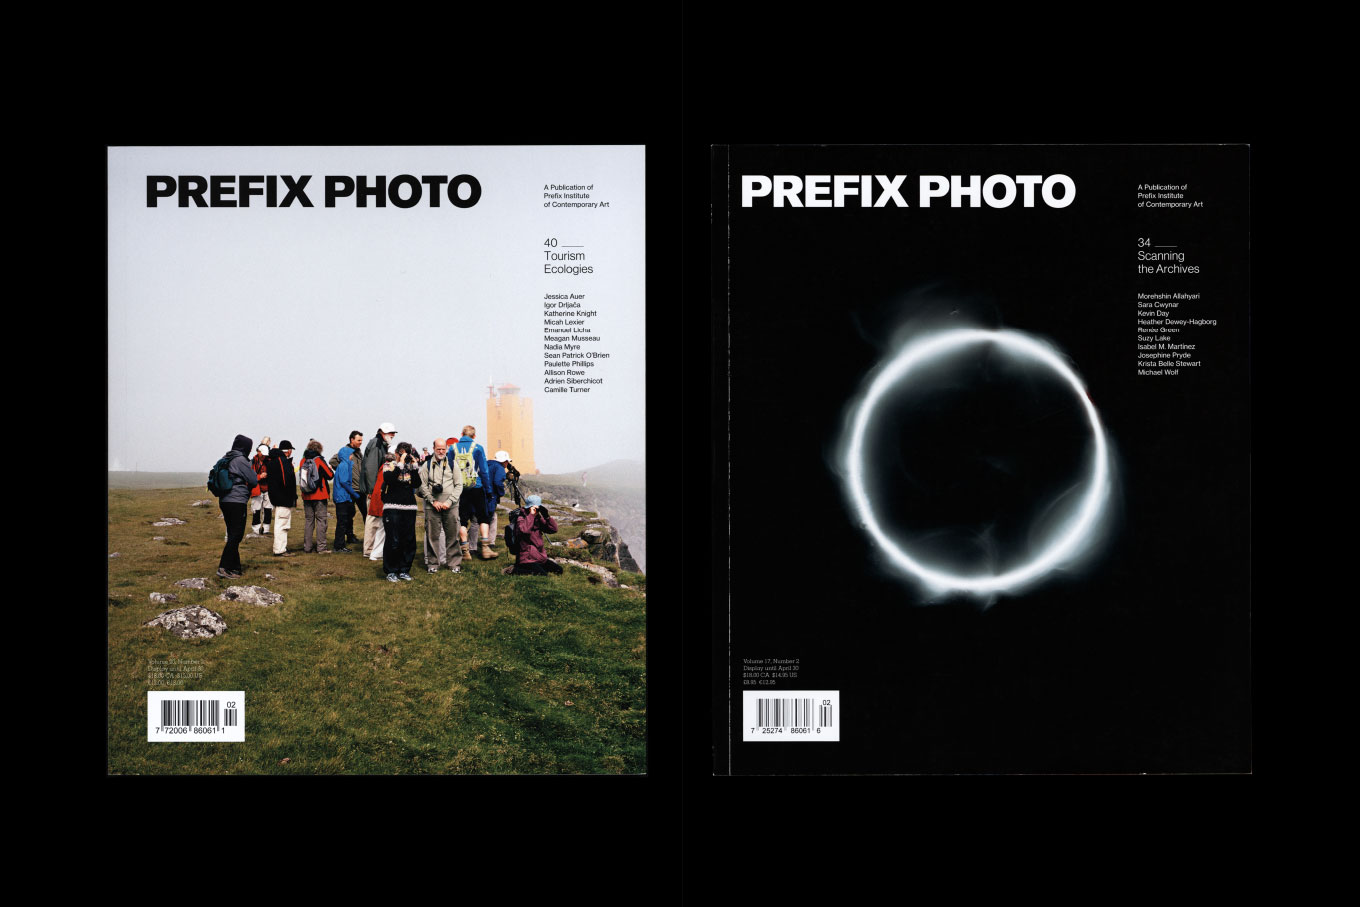 Covers of Prefix Photo magazines